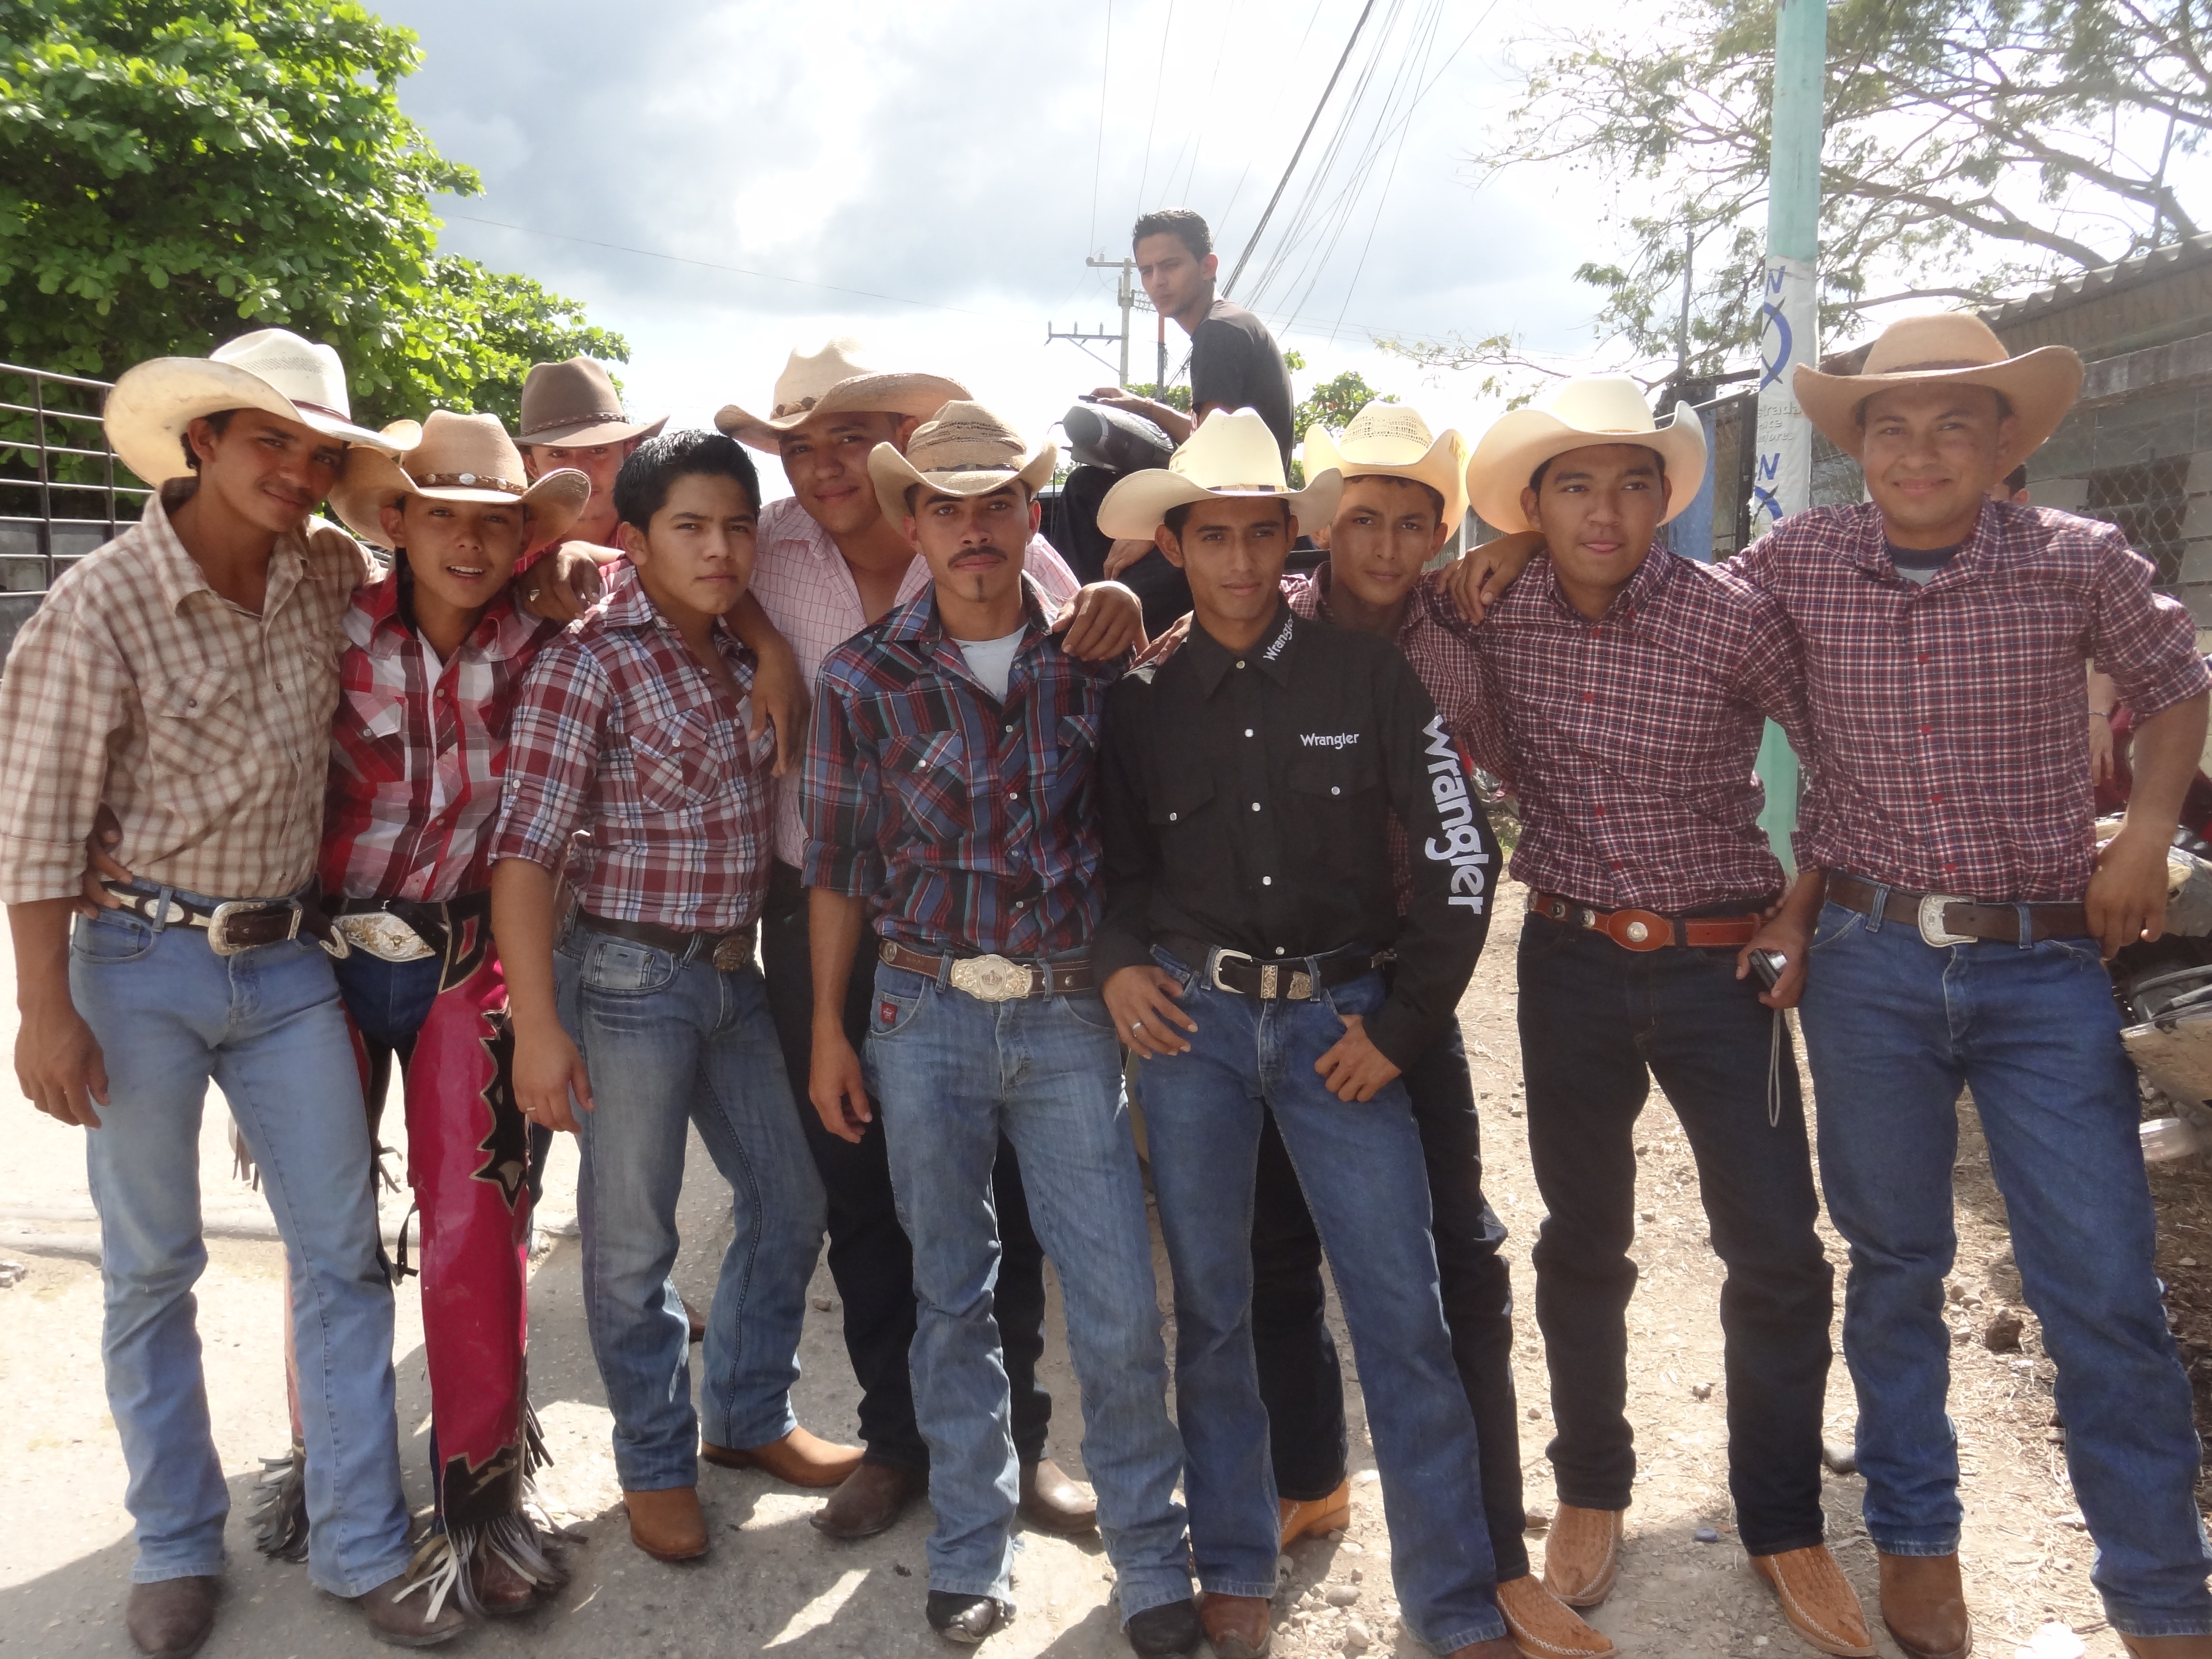 Voyage au Guatemala: Carnaval de Sayaxche, en compagnie des Cow-boys photo blog voyage tour du monde travel https://yoytourdumonde.fr